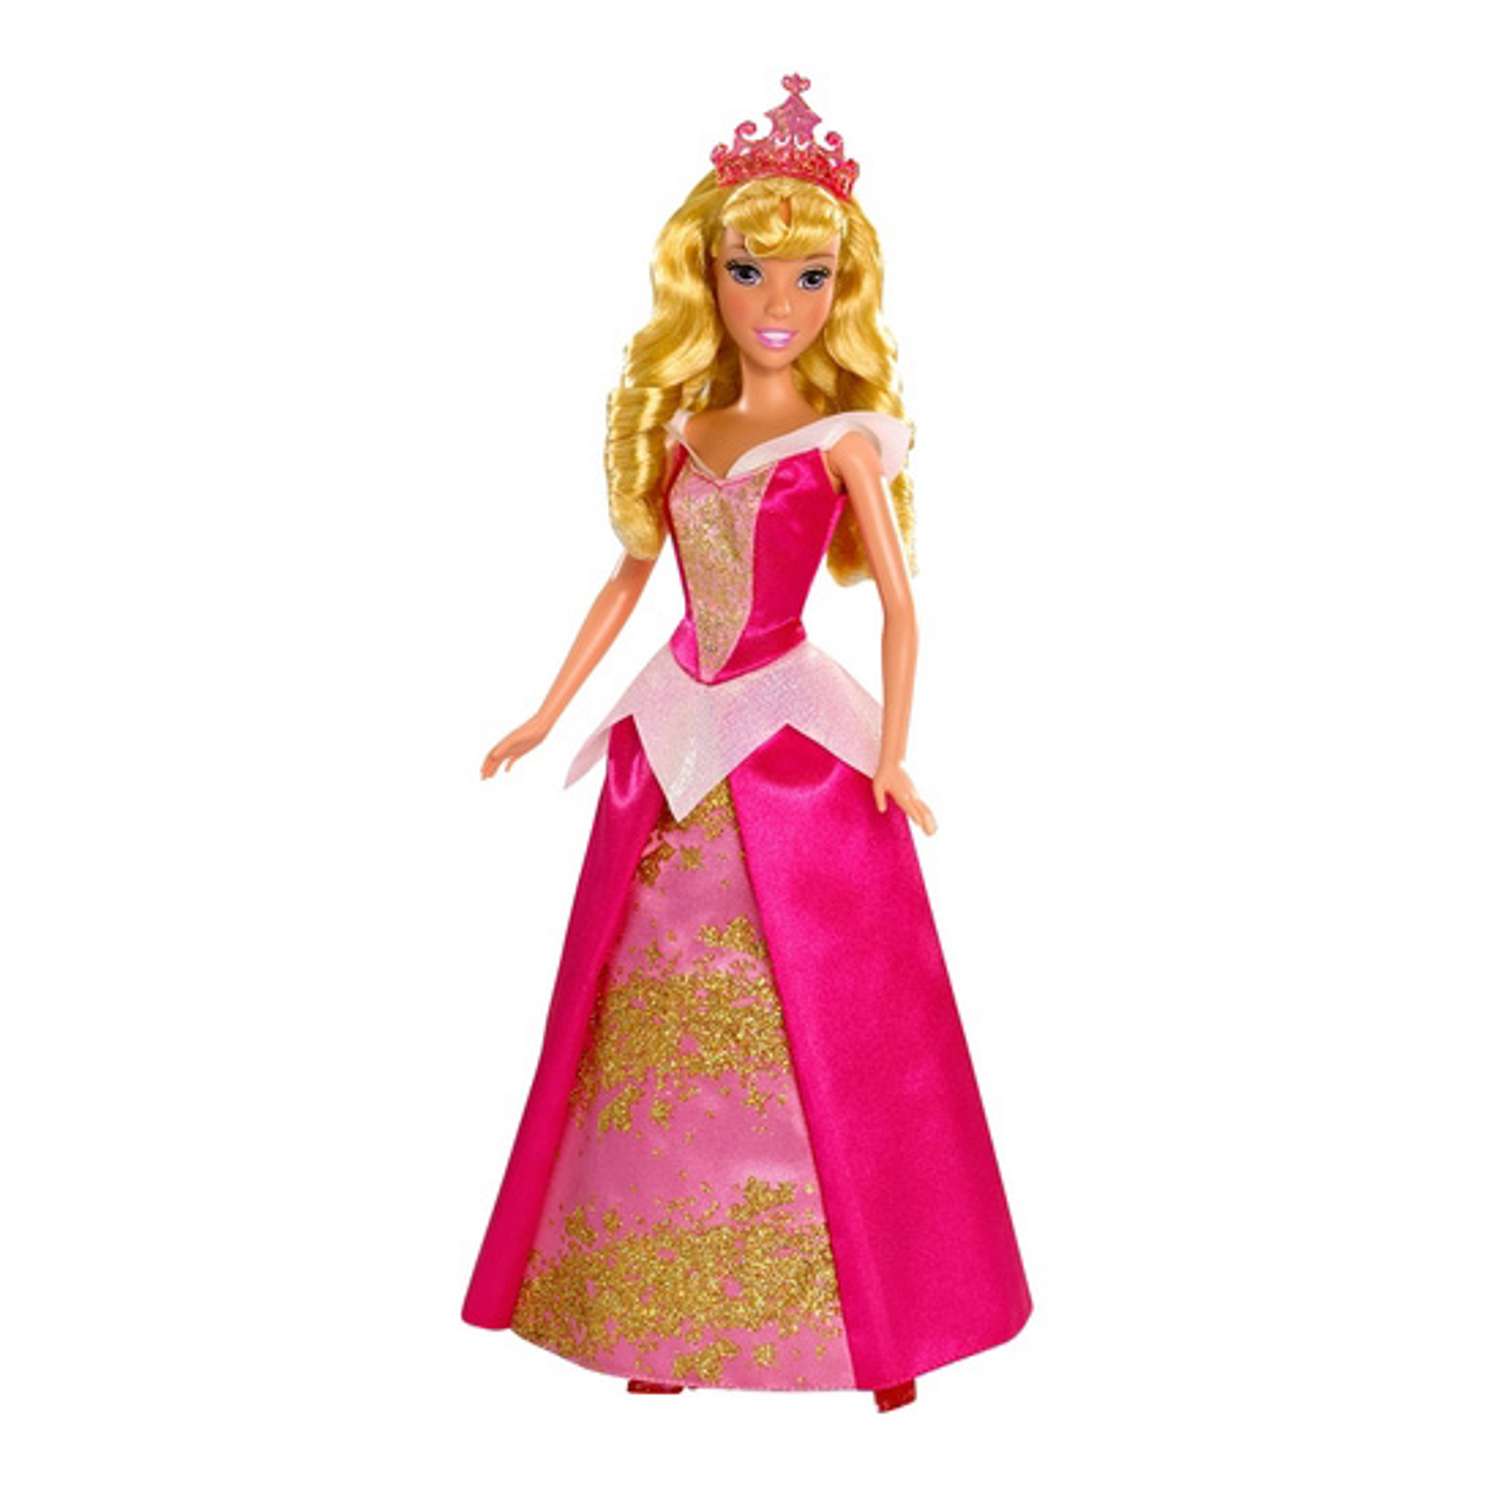 Принцесса Disney Princess Disney в сверкающих нарядах в ассортименте - фото 1